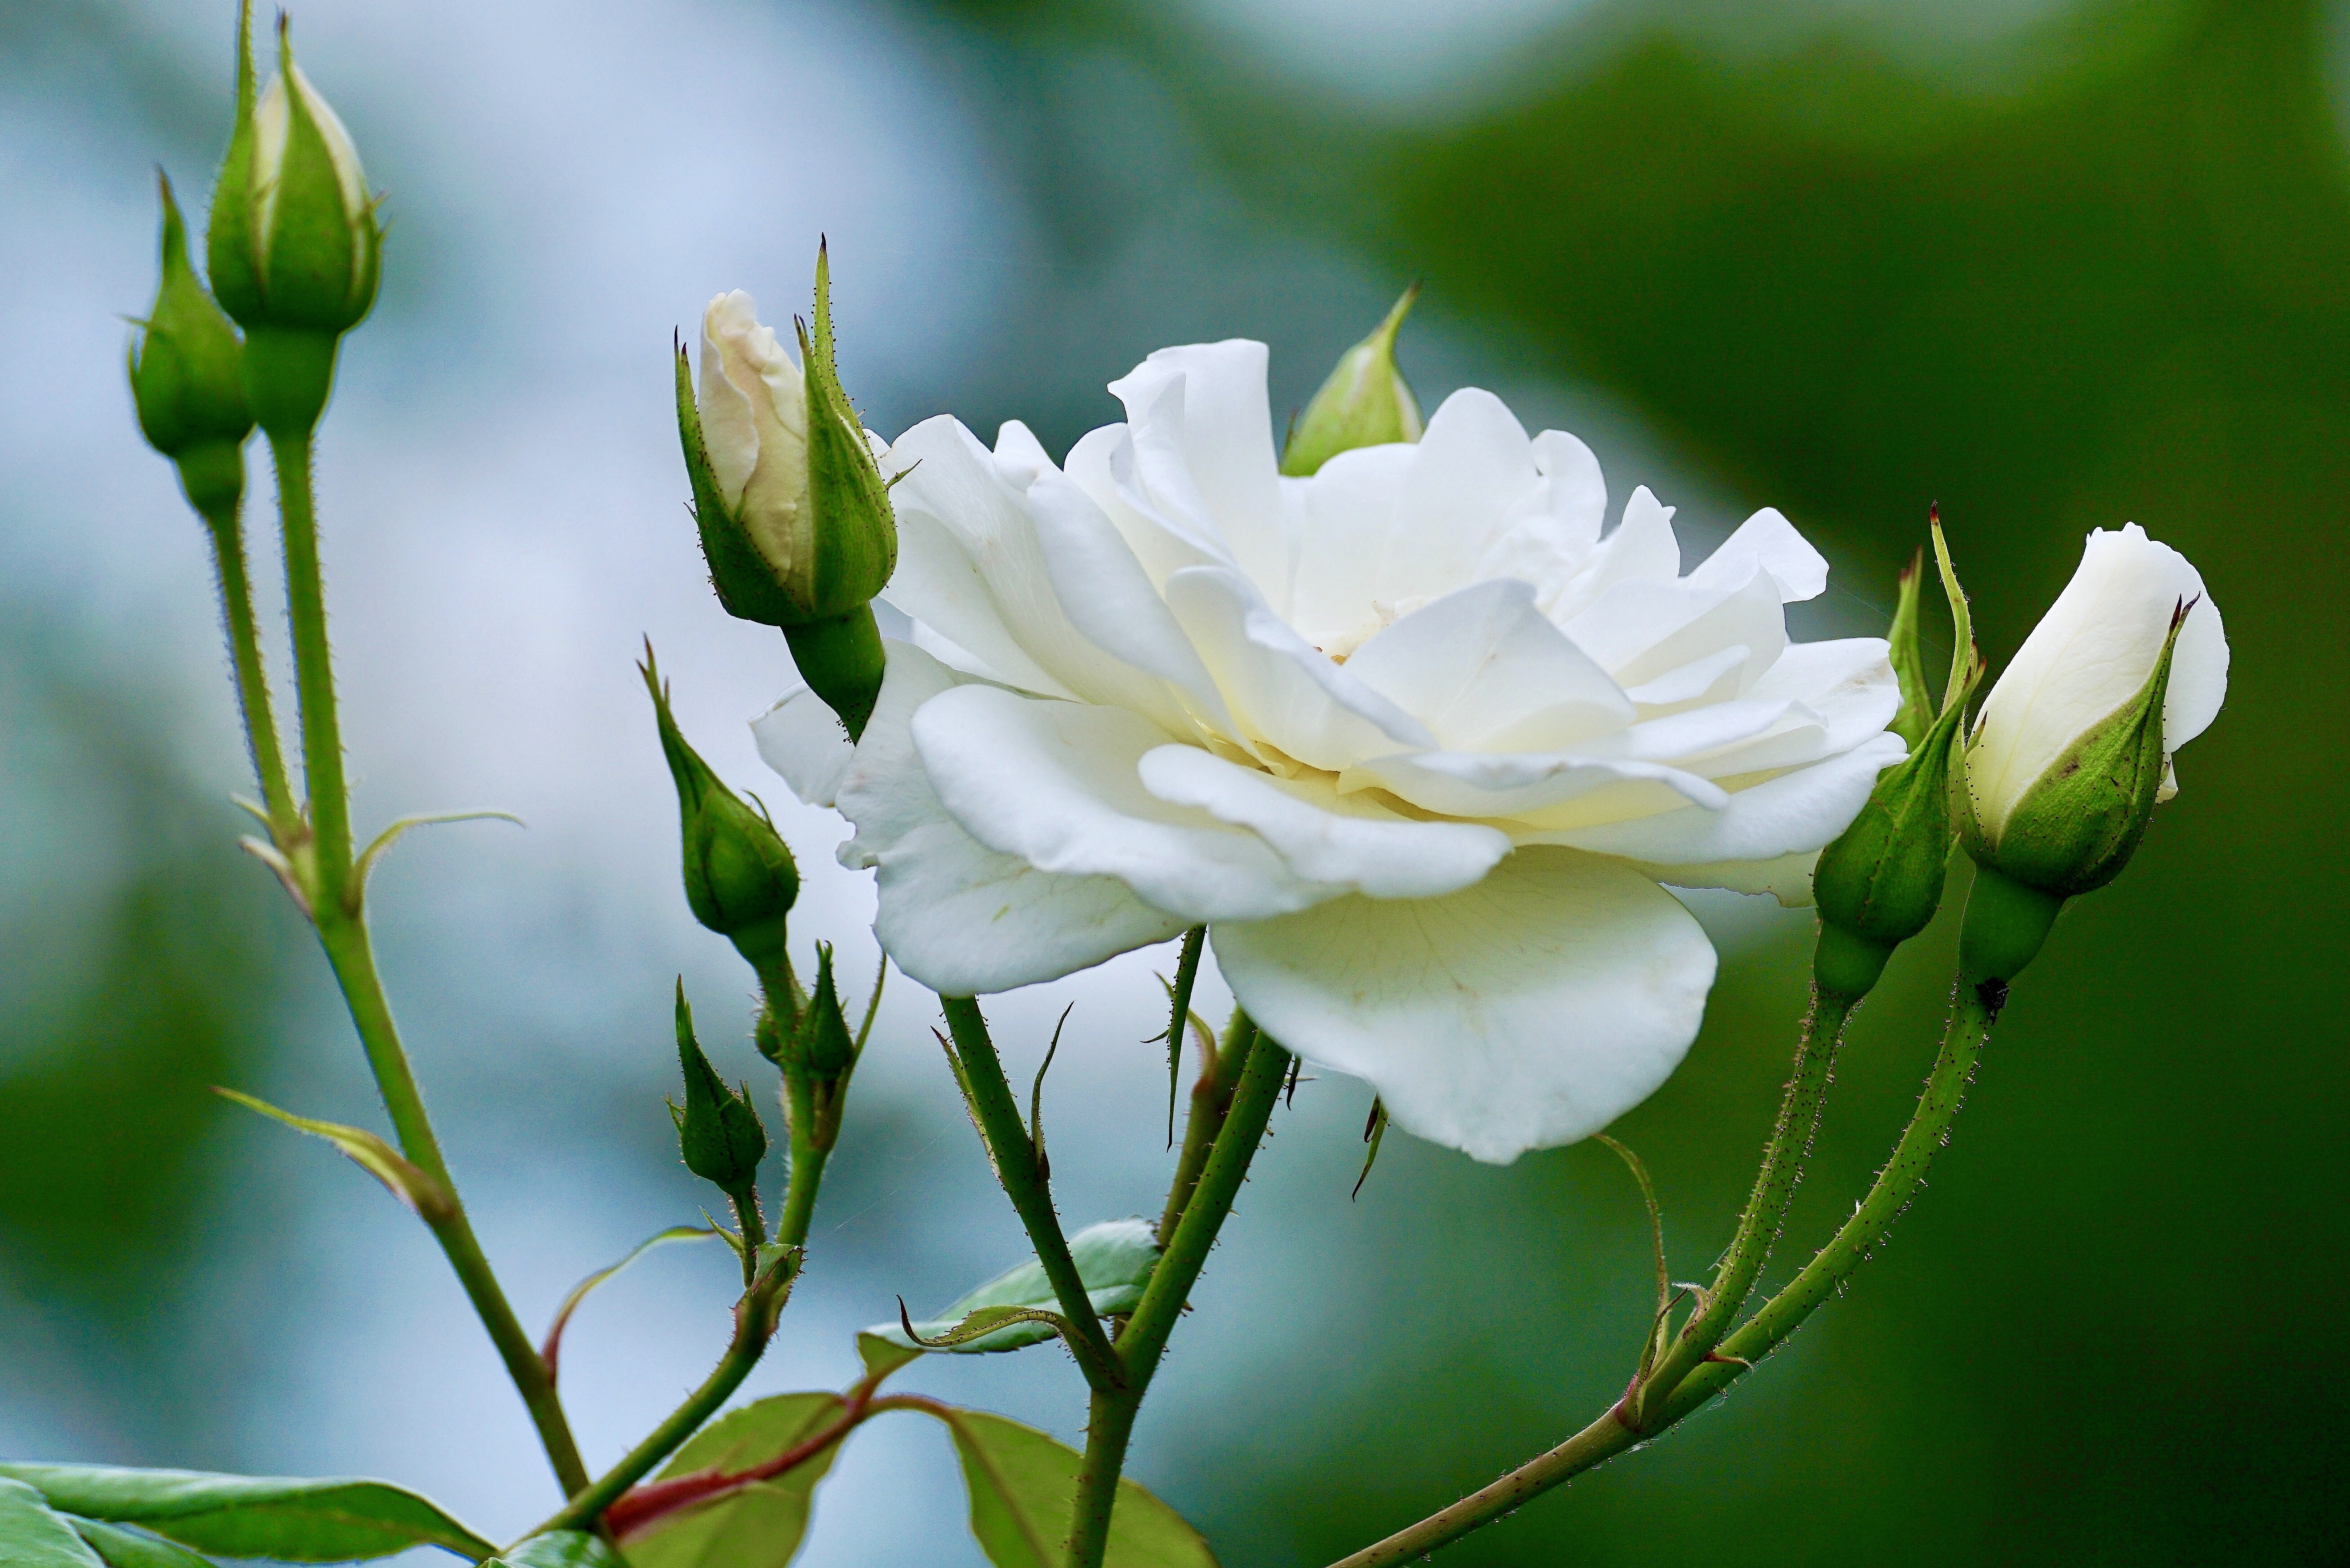 Белоснежные розы